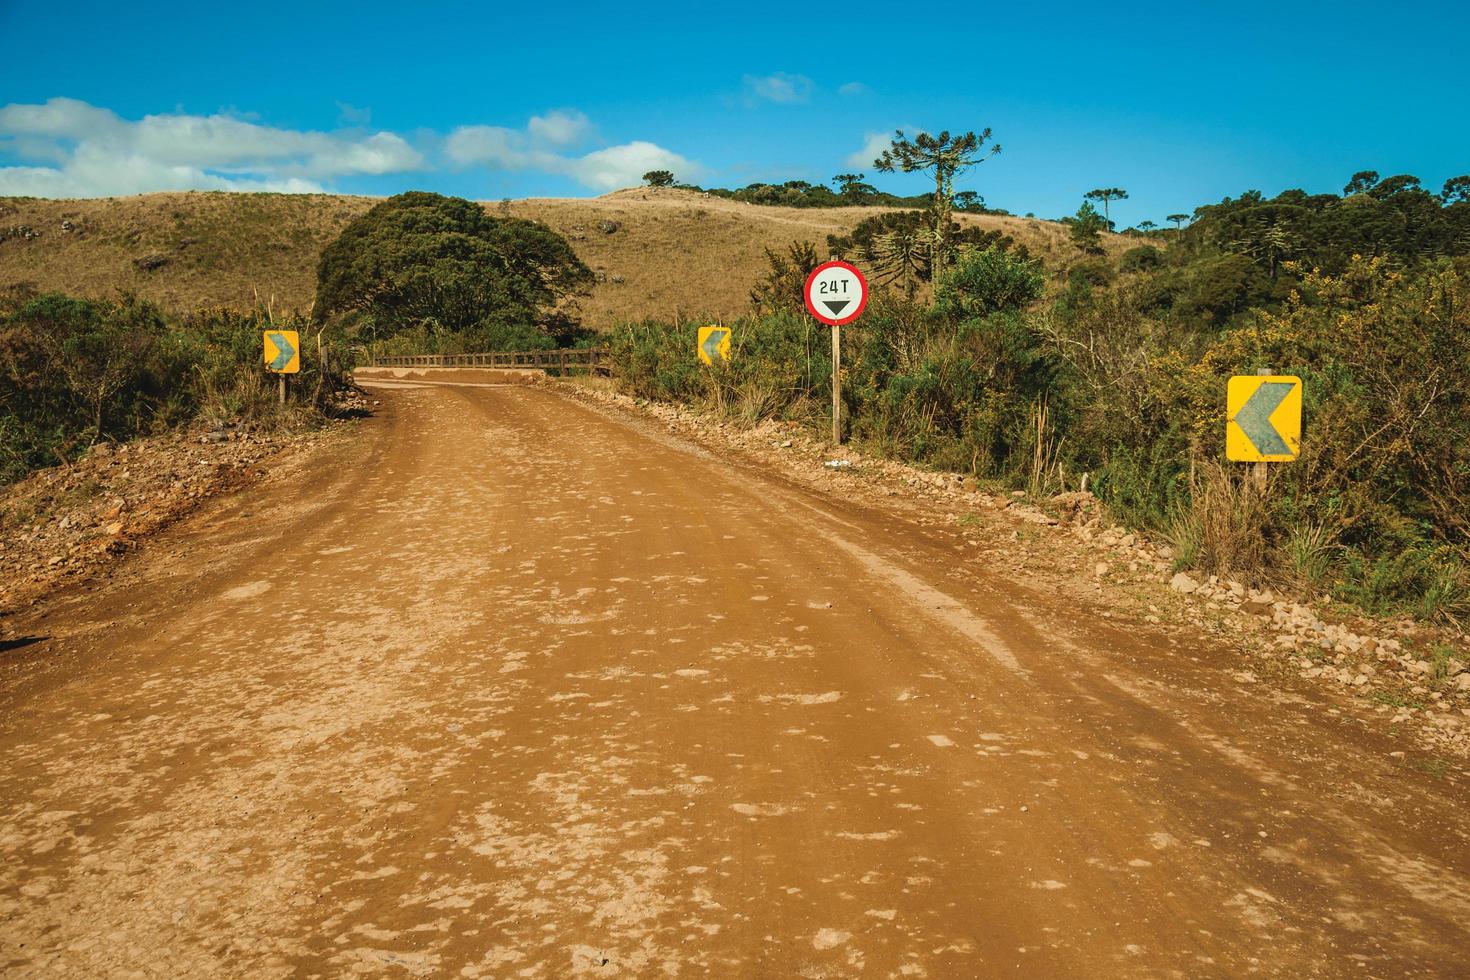 chemin de terre déserte traversant des plaines rurales appelées pampas avec des collines et des panneaux de signalisation près de cambara do sul. une petite ville de campagne dans le sud du brésil avec des attractions touristiques naturelles étonnantes. photo